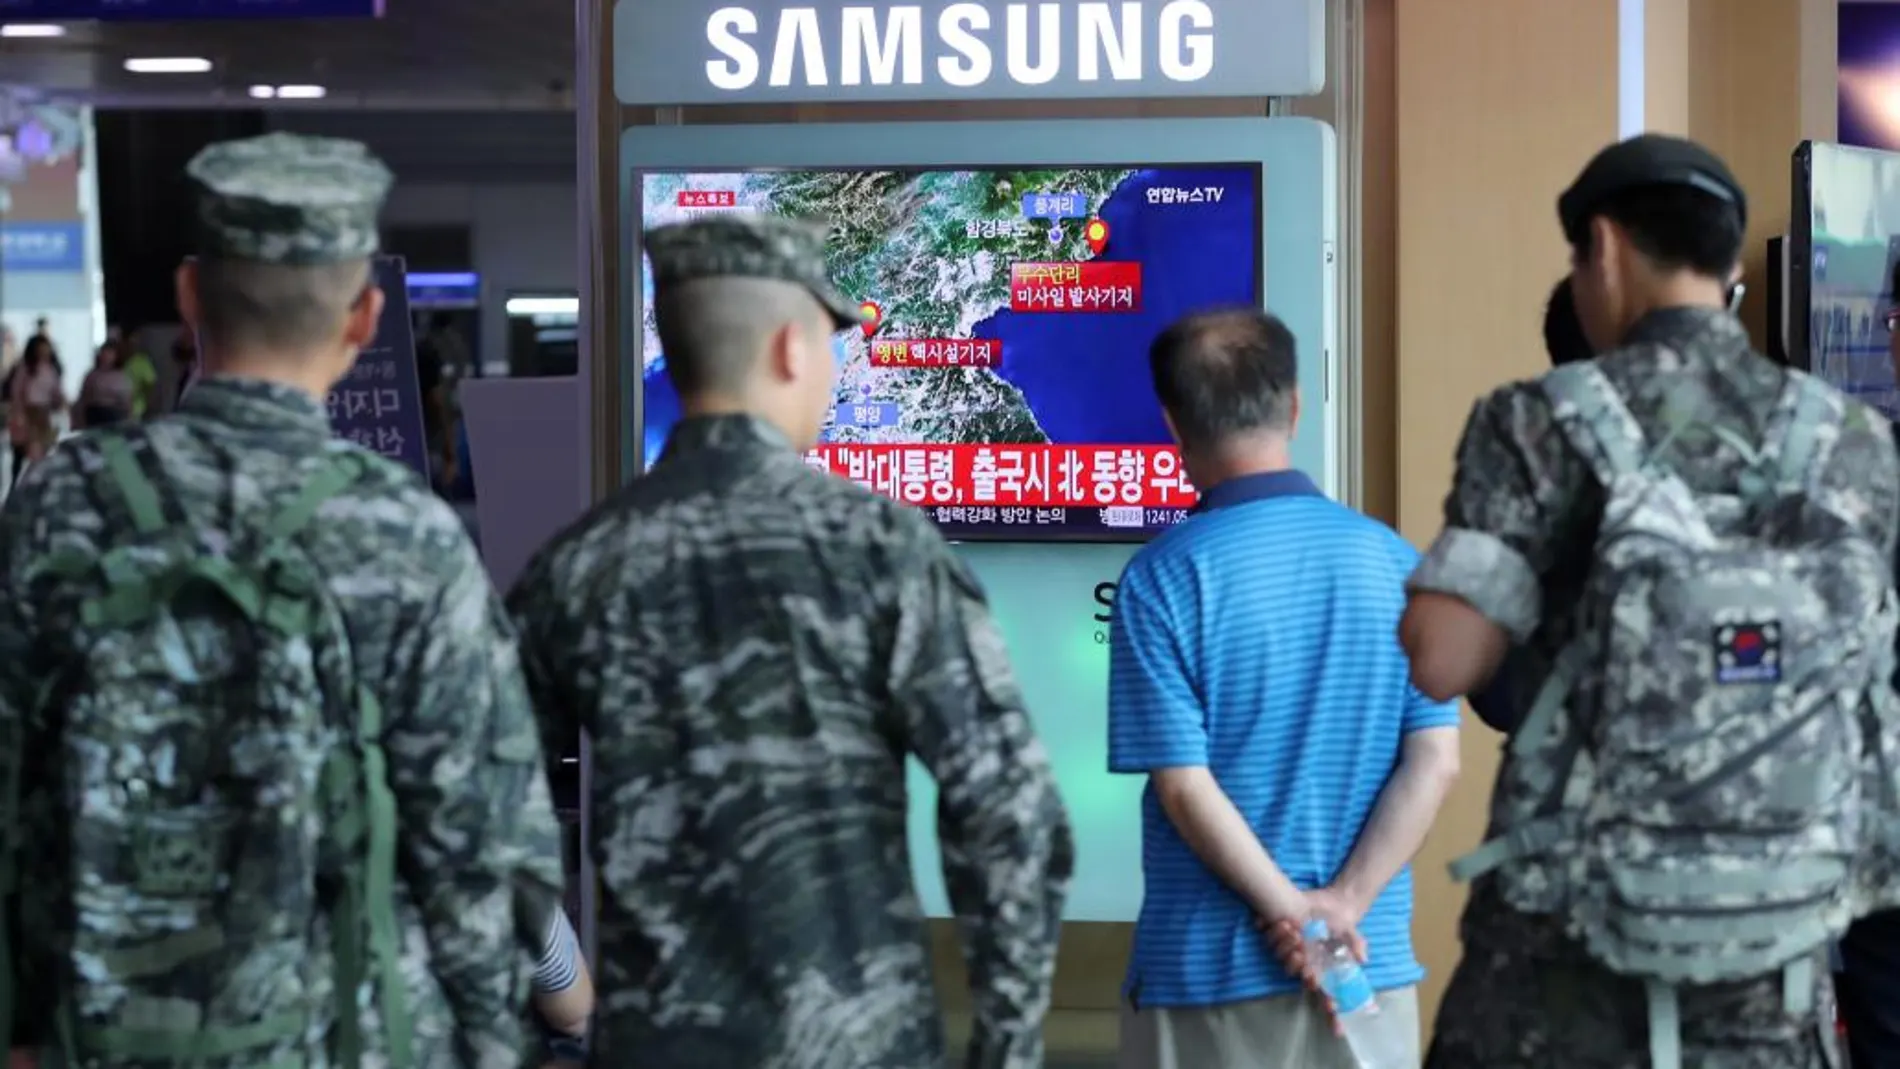 Un grupo de personas observa una transmisión de televisión sobre un movimiento sísmico h en Corea del Norte, indicativo de una nueva prueba nuclear del régimen comunista de Kim Jong-un